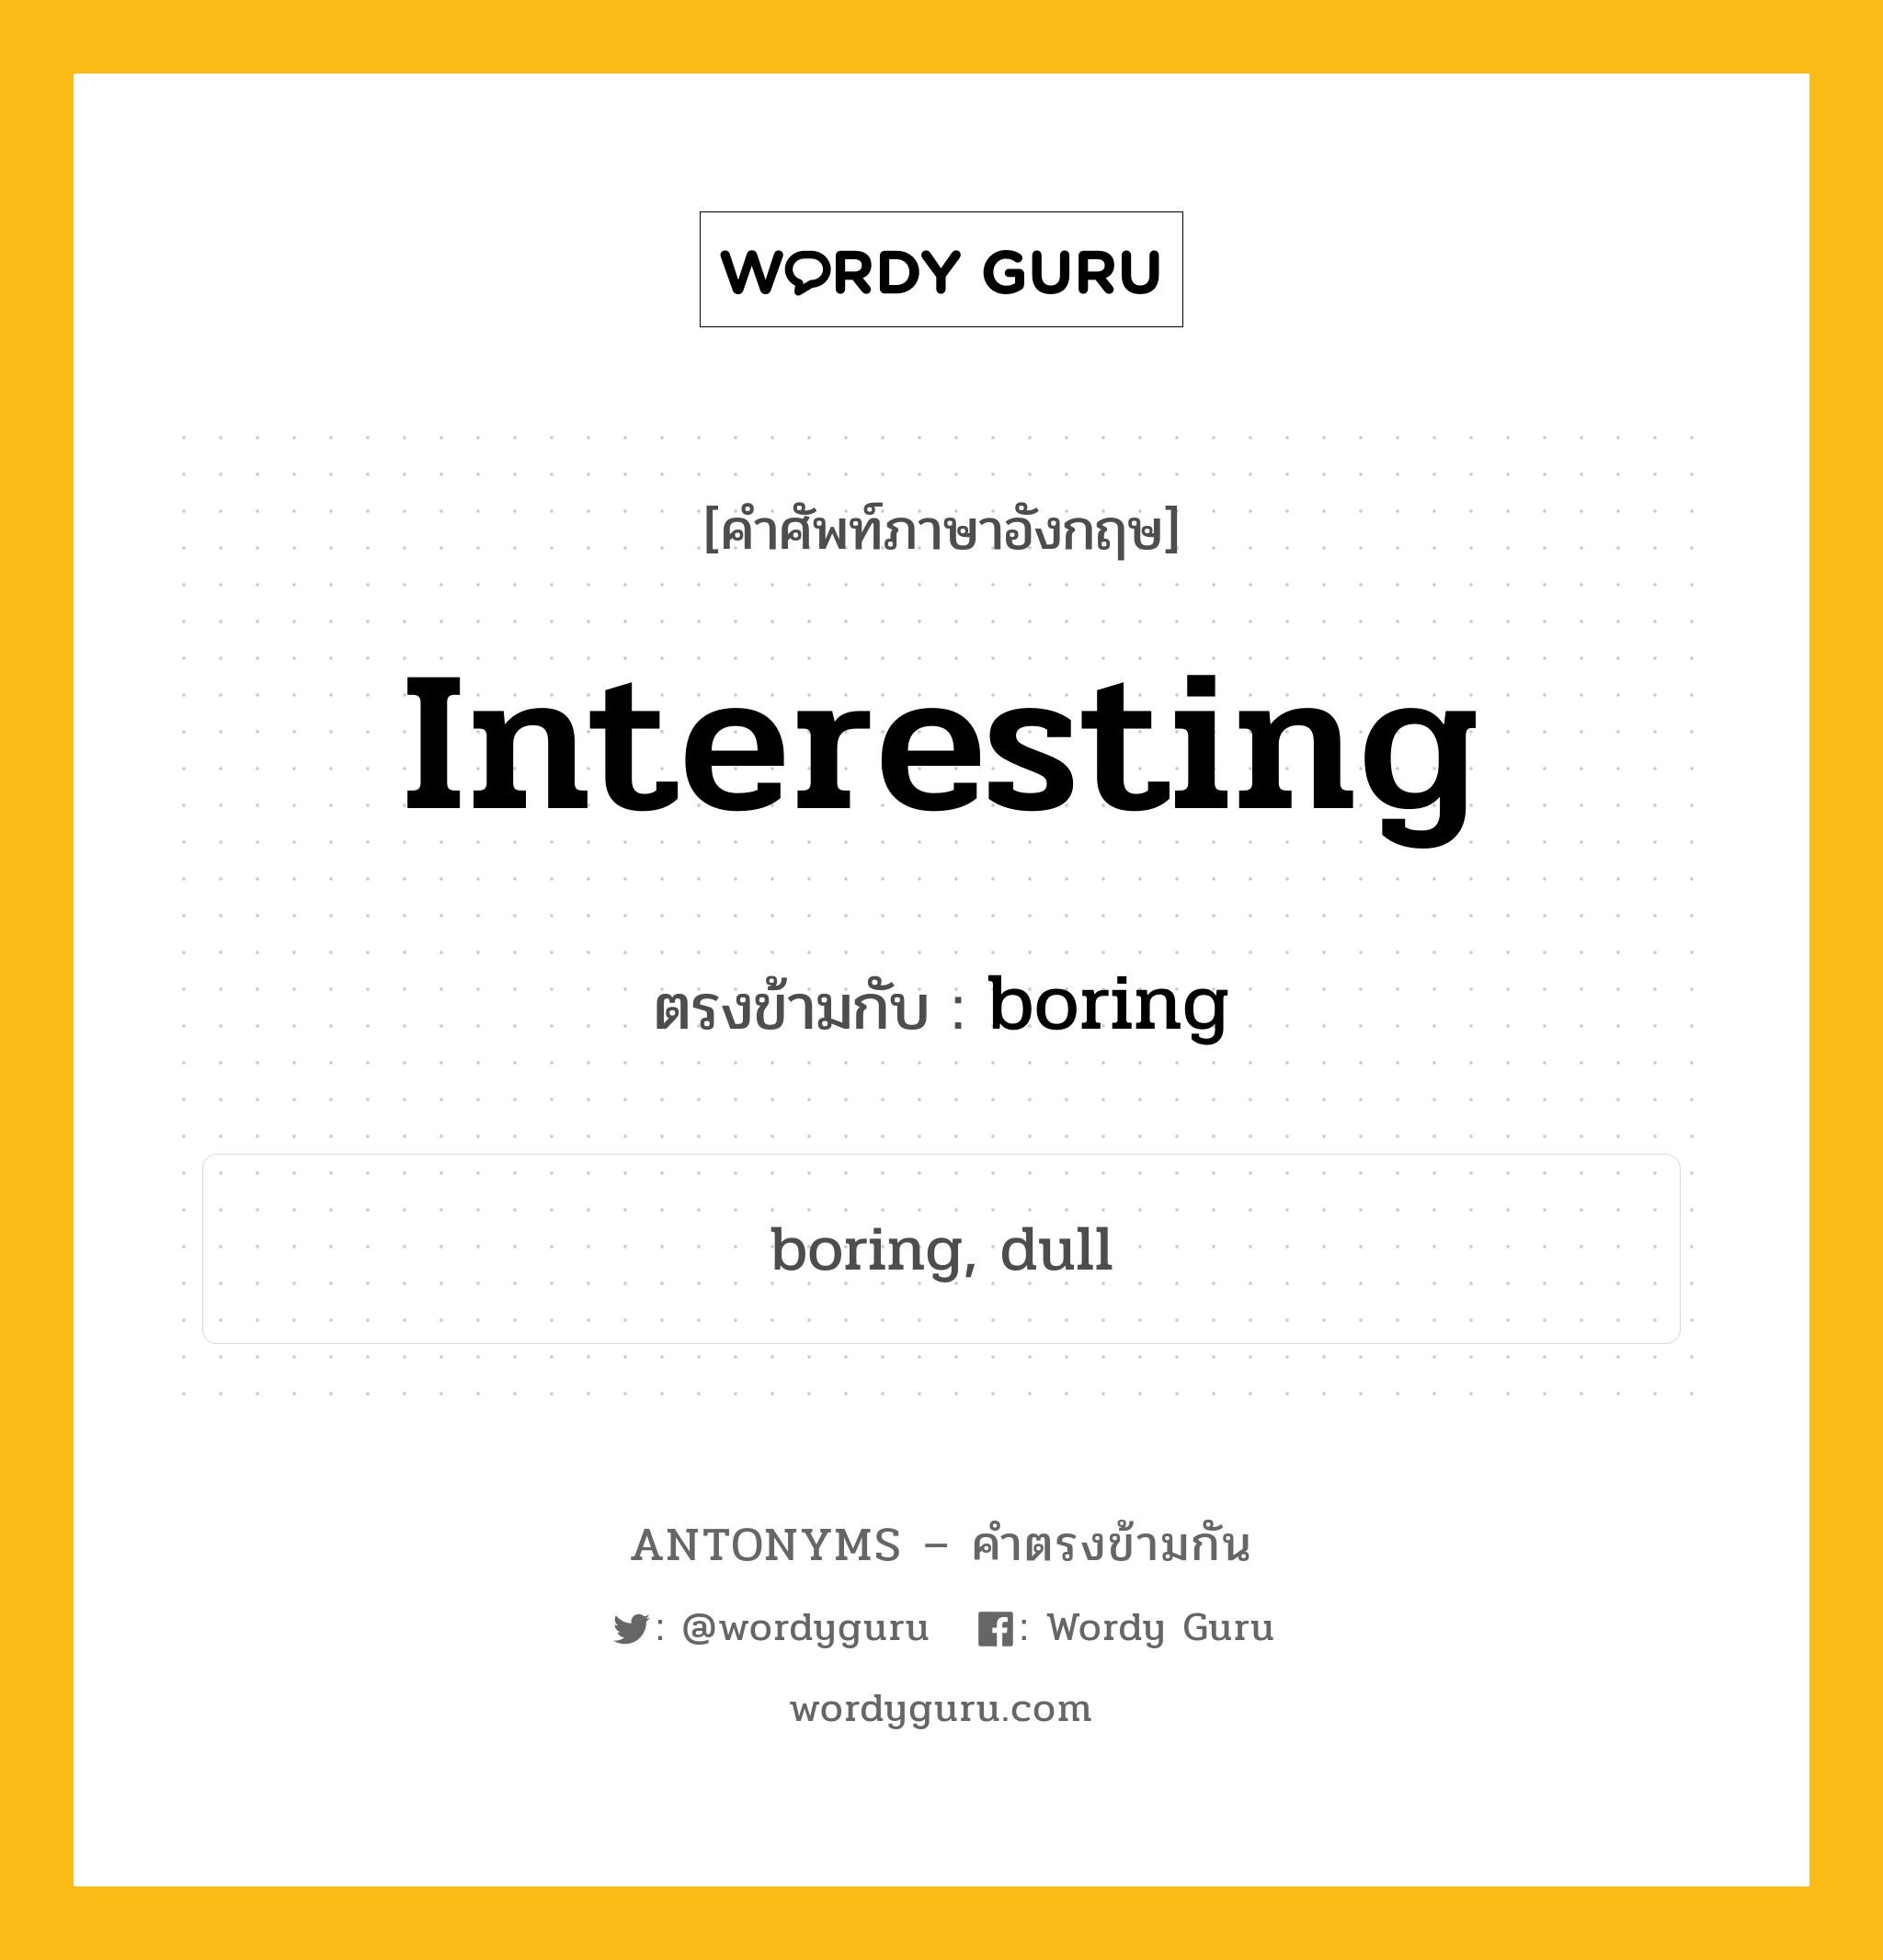 interesting เป็นคำตรงข้ามกับคำไหนบ้าง?, คำศัพท์ภาษาอังกฤษ interesting ตรงข้ามกับ boring หมวด boring